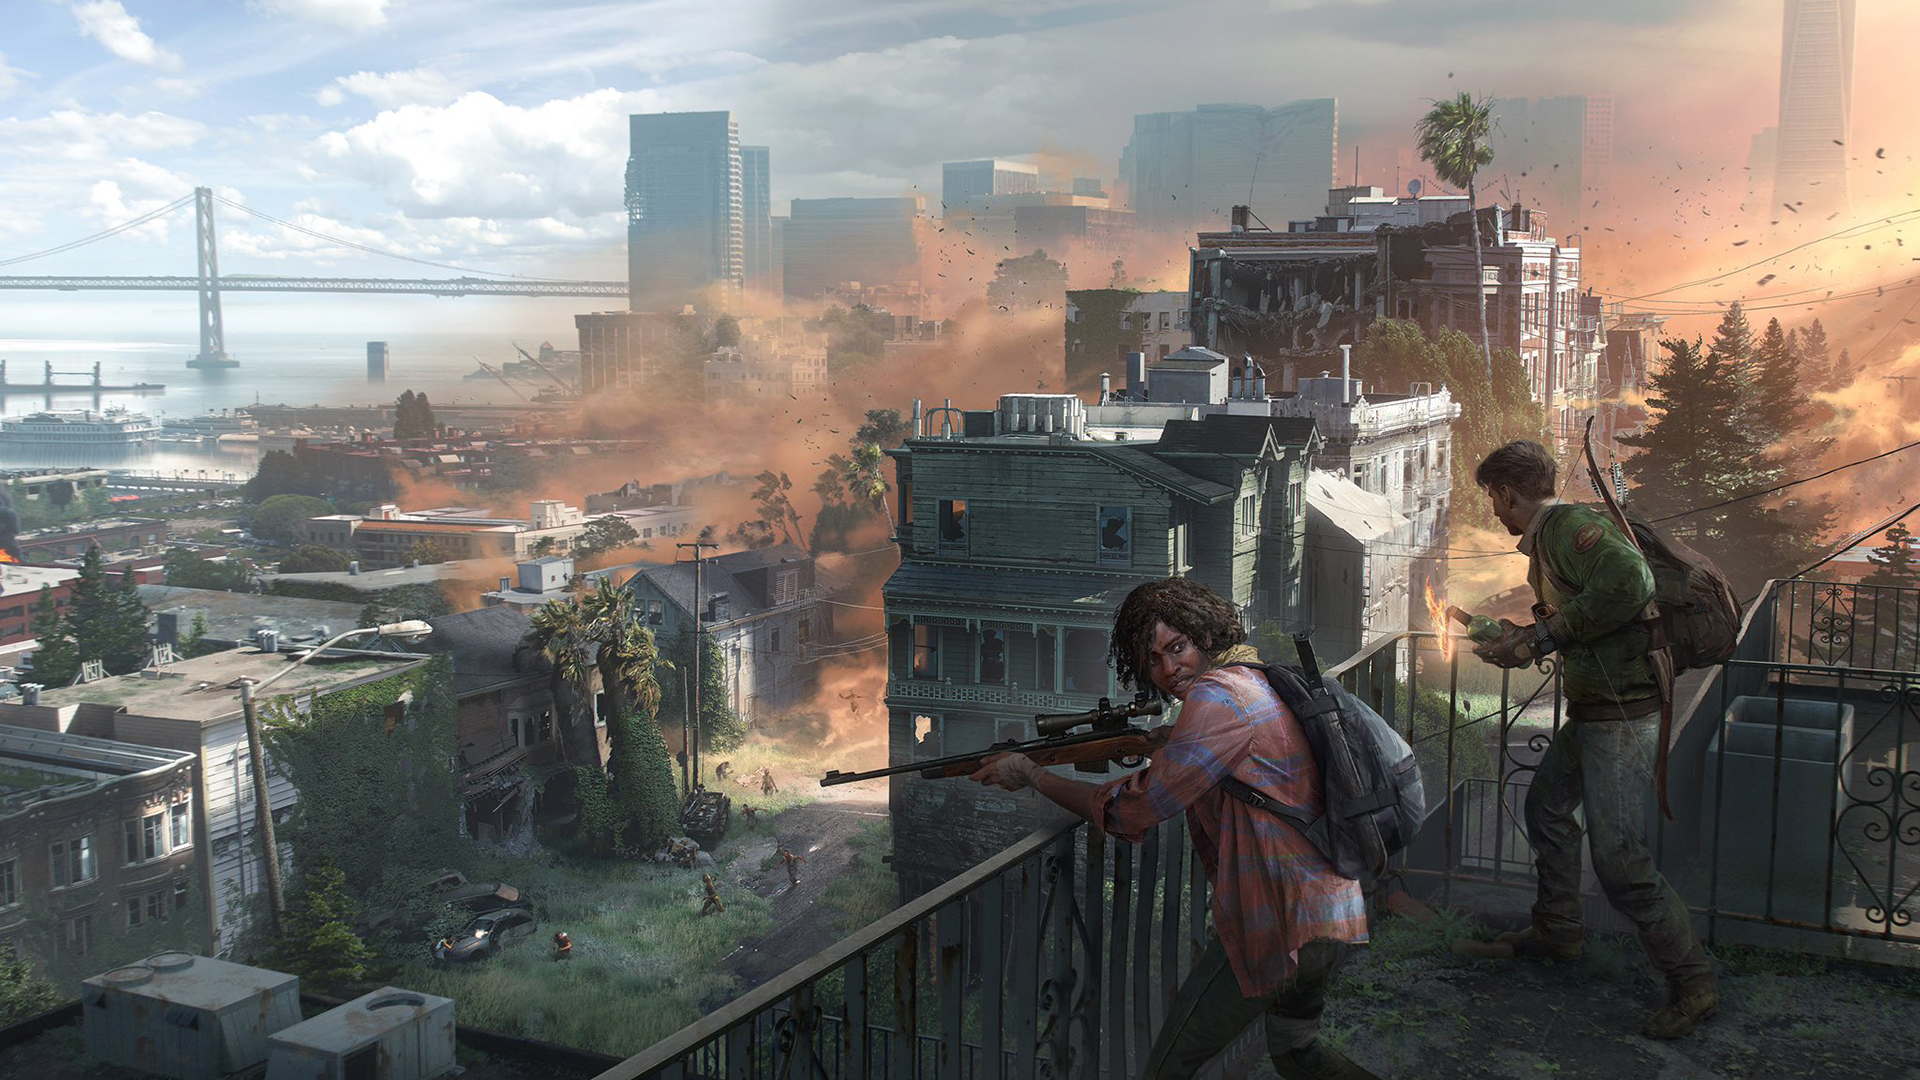 ชมภาพคอนเซ็ปต์ ‘The Last of Us’ เกมมัลติเพลเยอร์แบบสแตนด์อโลน